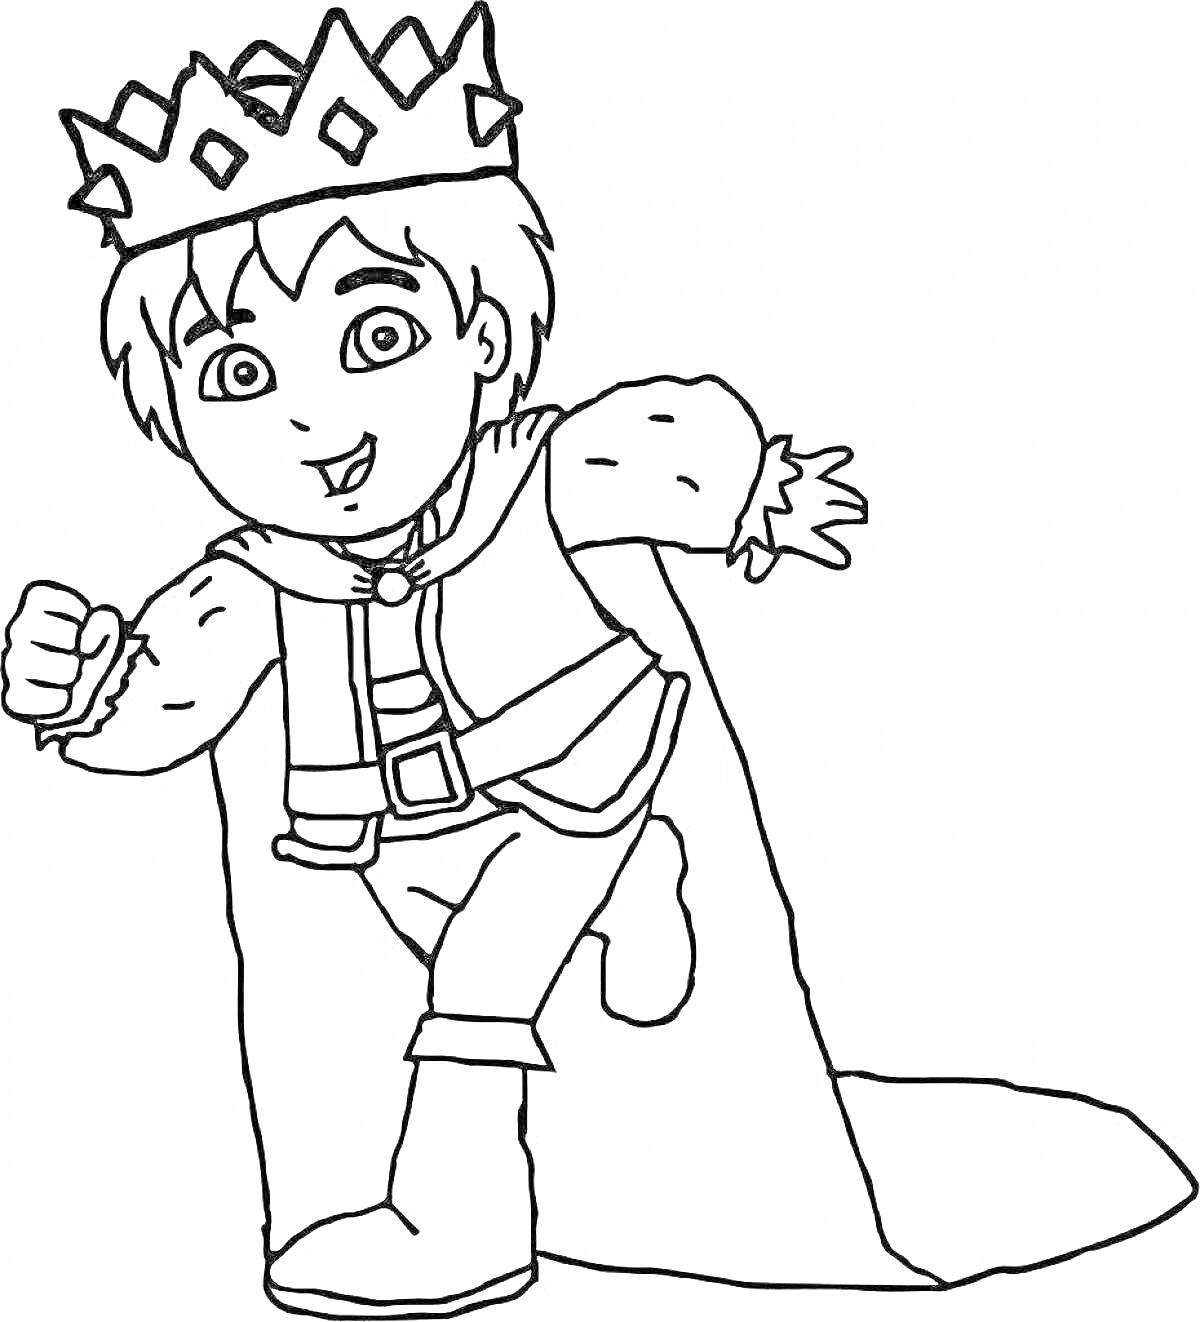 Раскраска Диего в костюме принца с короной и плащом